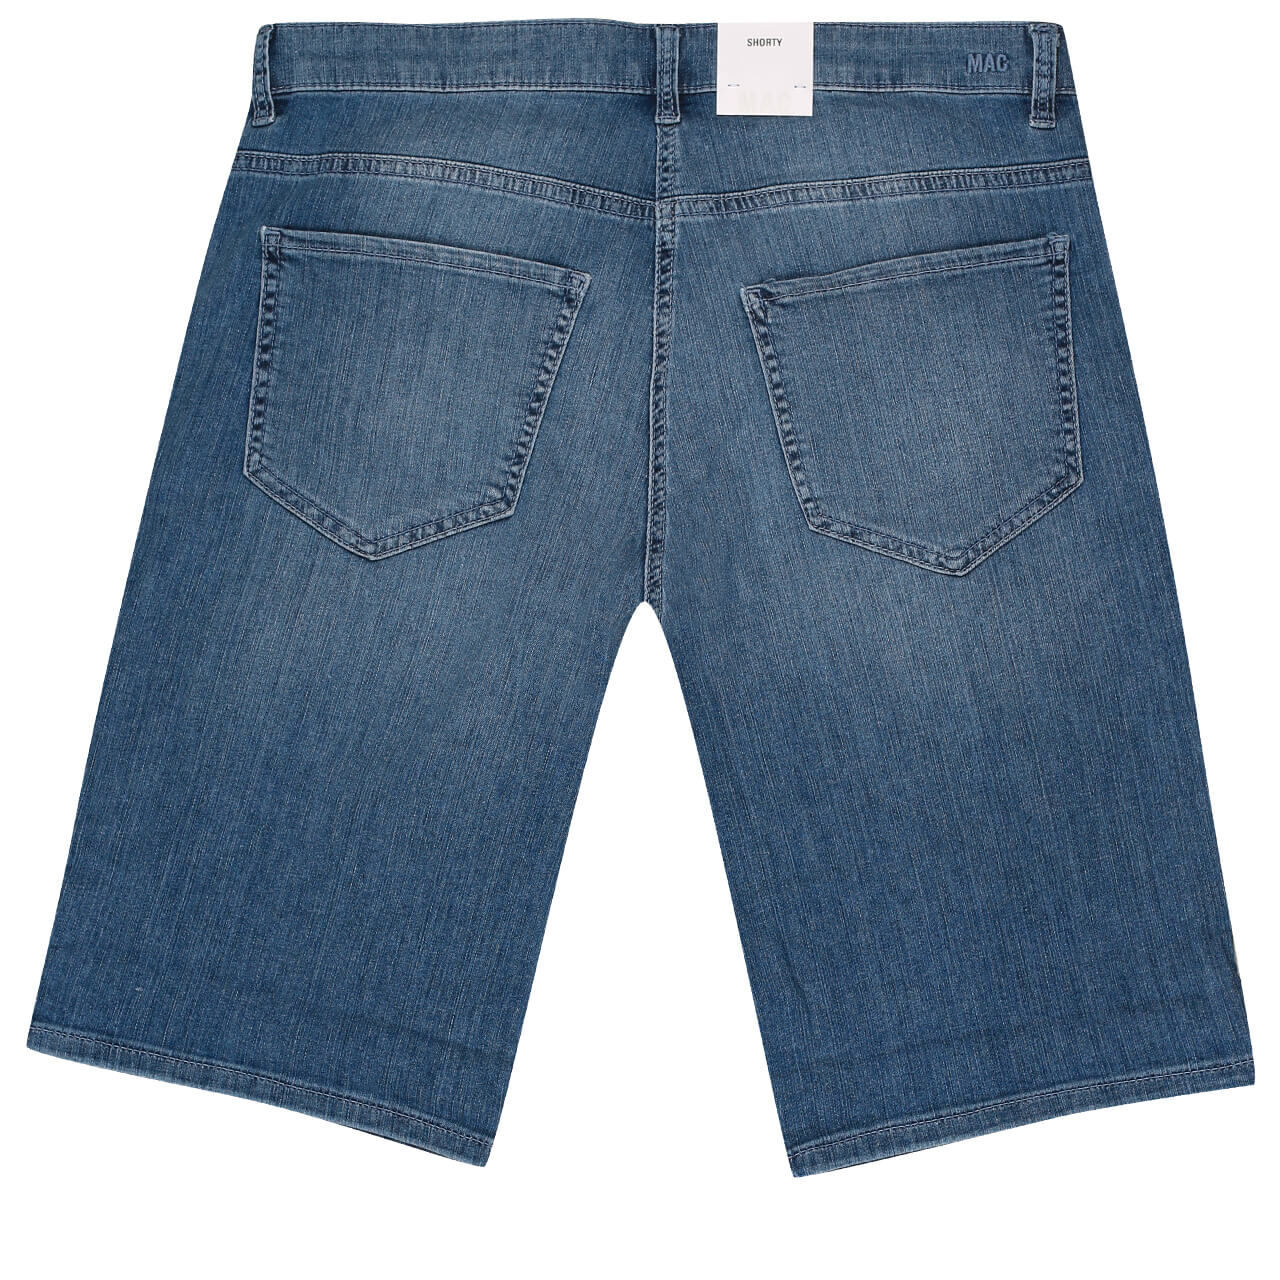 MAC Jeans Shorty für Damen in Blau verwaschen, FarbNr.: D531